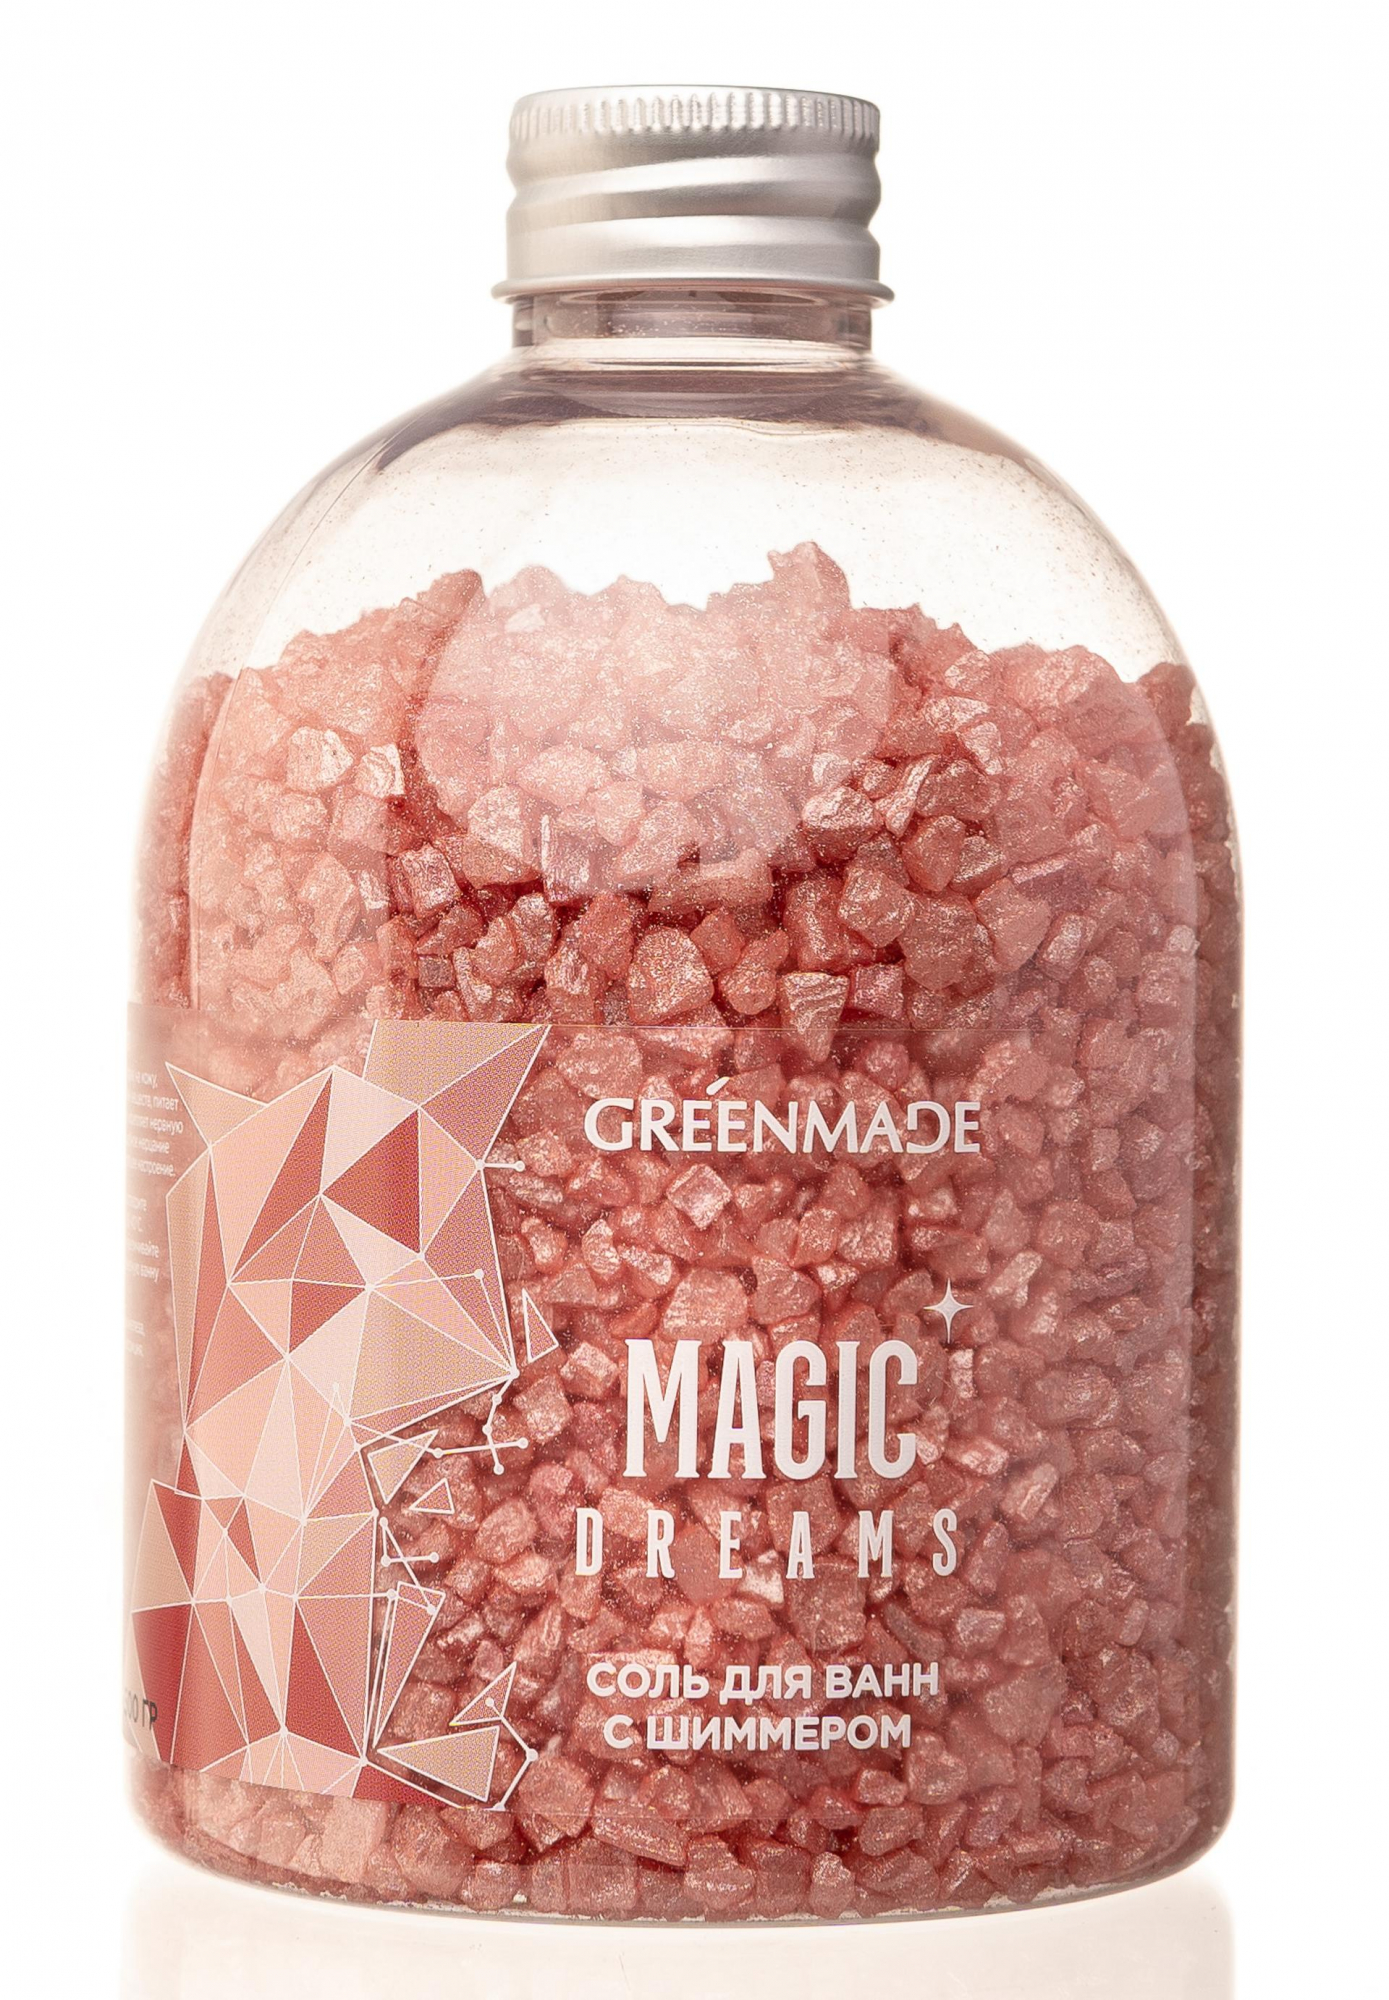 Соль для ванны с шиммером magic dreams,500г купить в онлайн экомаркете